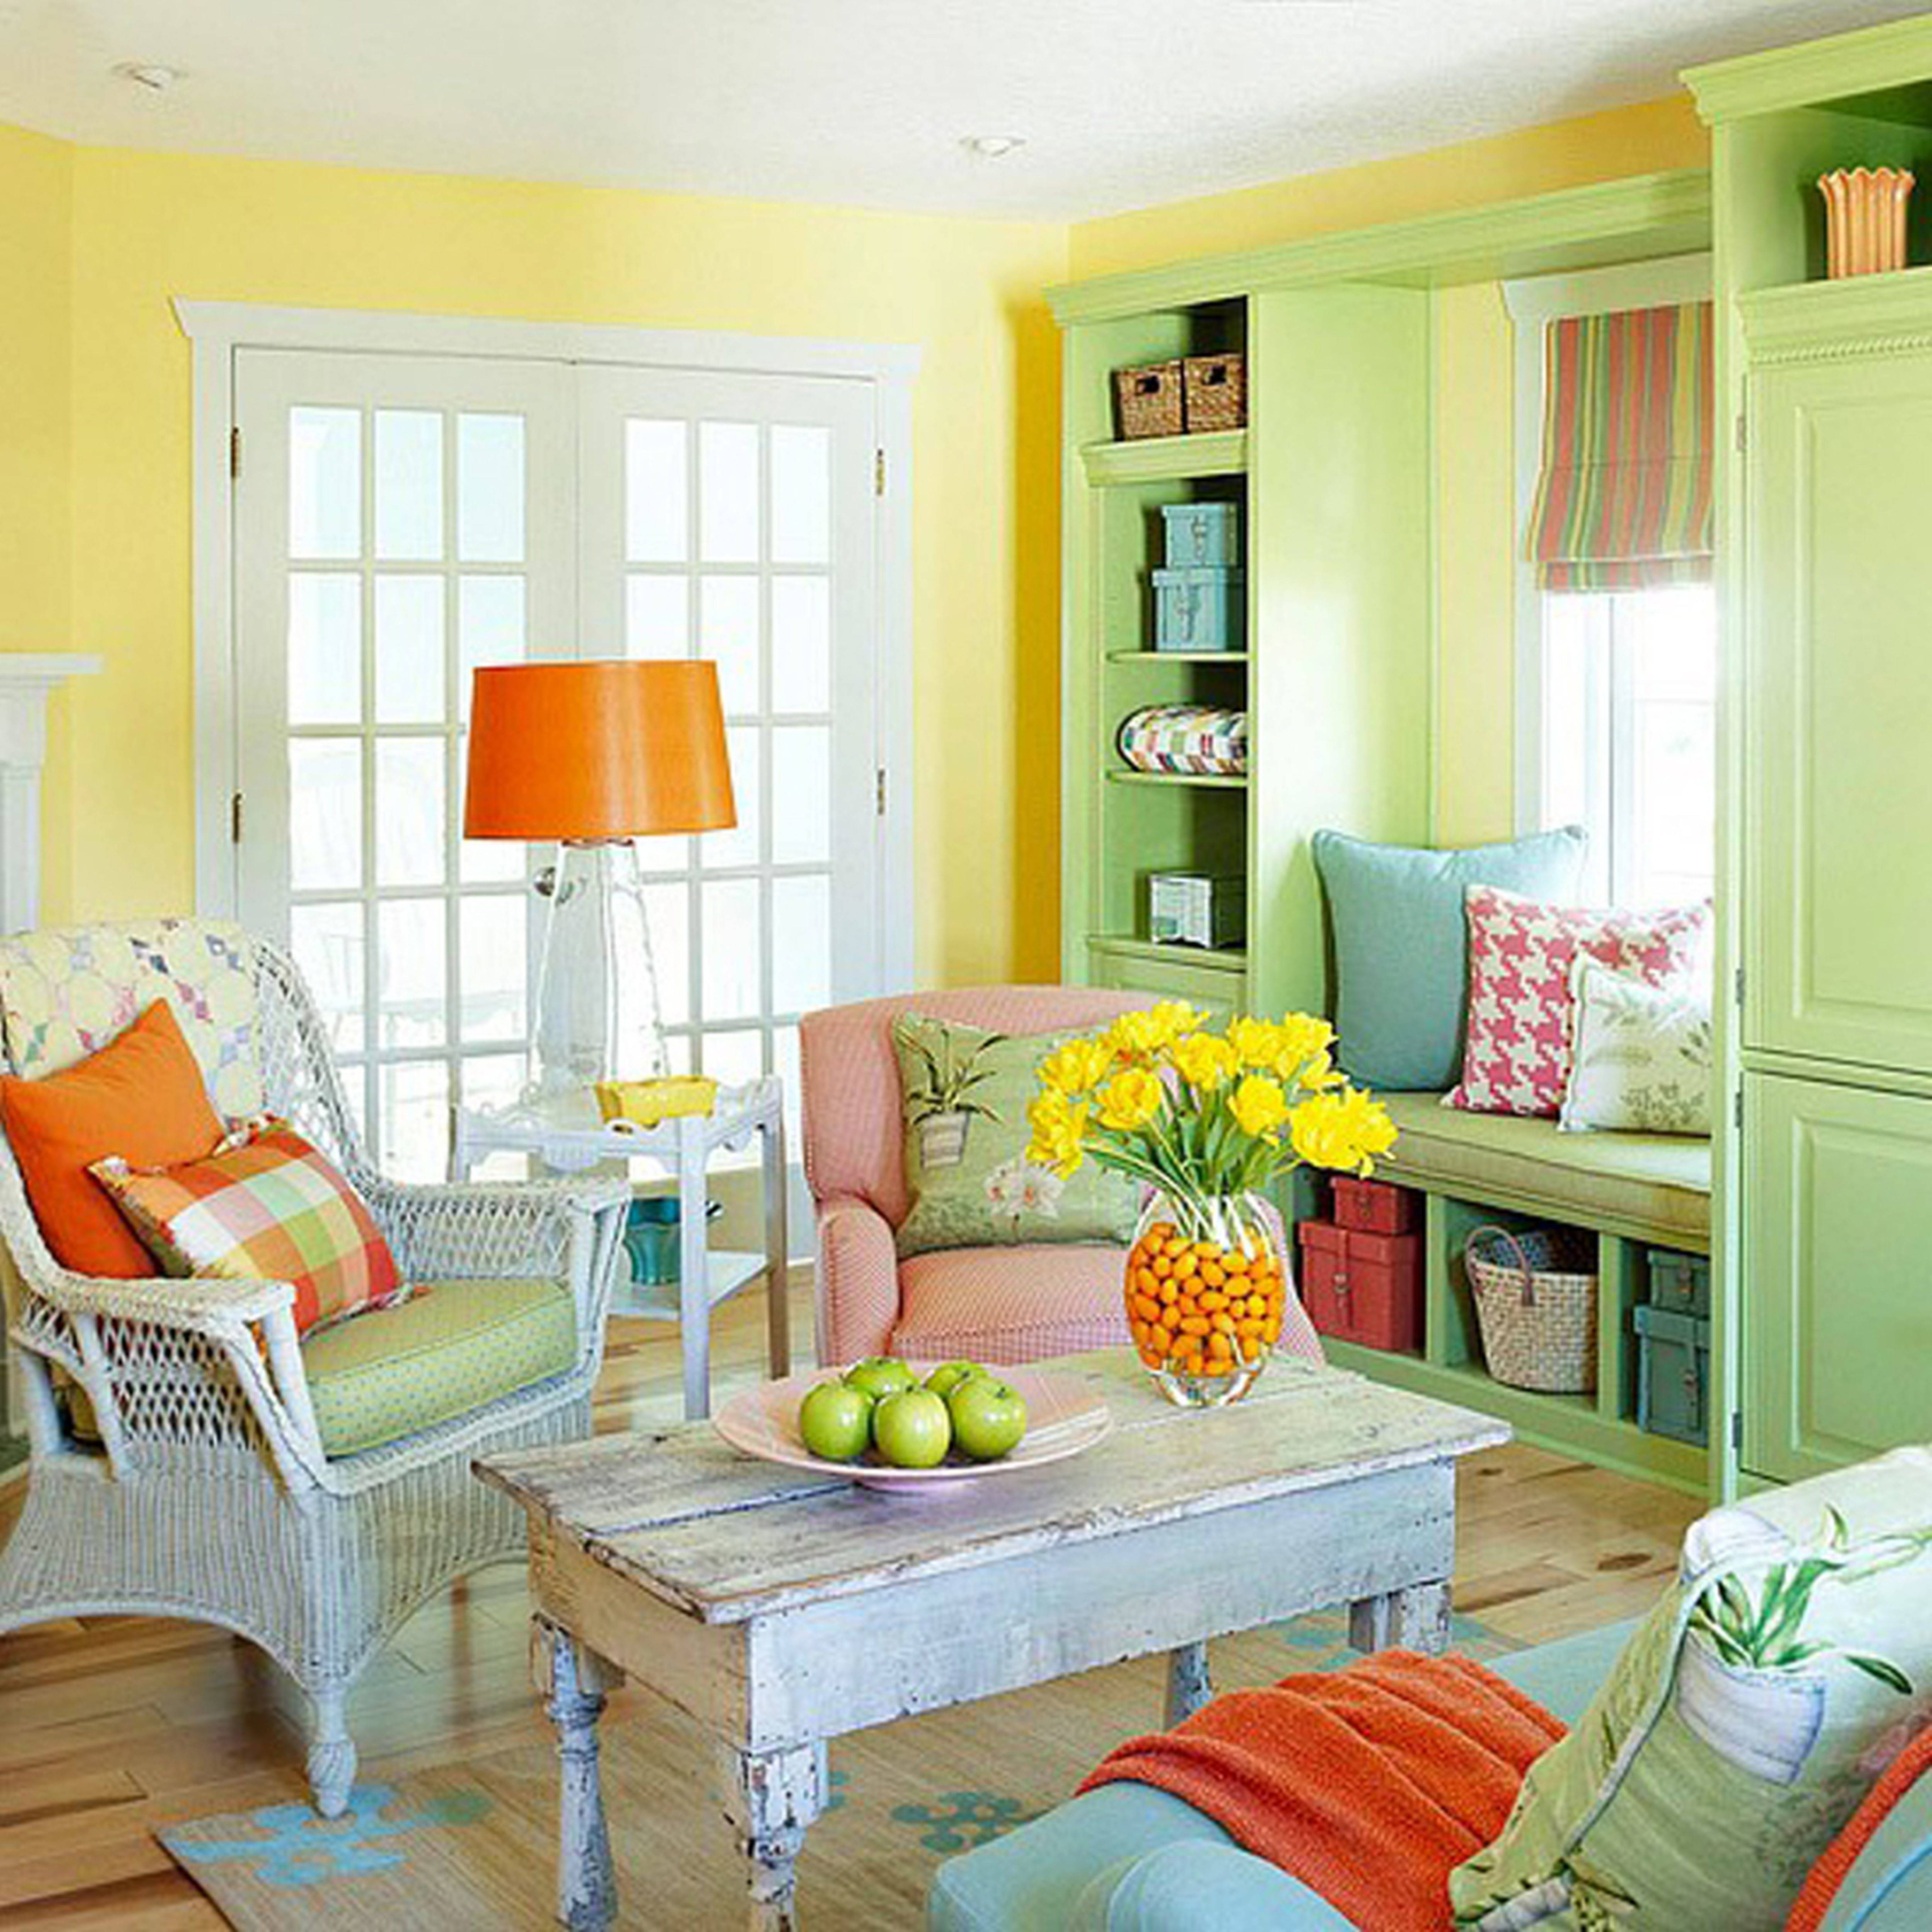 Разная мебель в разных комнатах. Яркие цвета в интерьере. Интерьер в ярких тонах. Яркая мебель в интерьере. Яркие стены в интерьере.